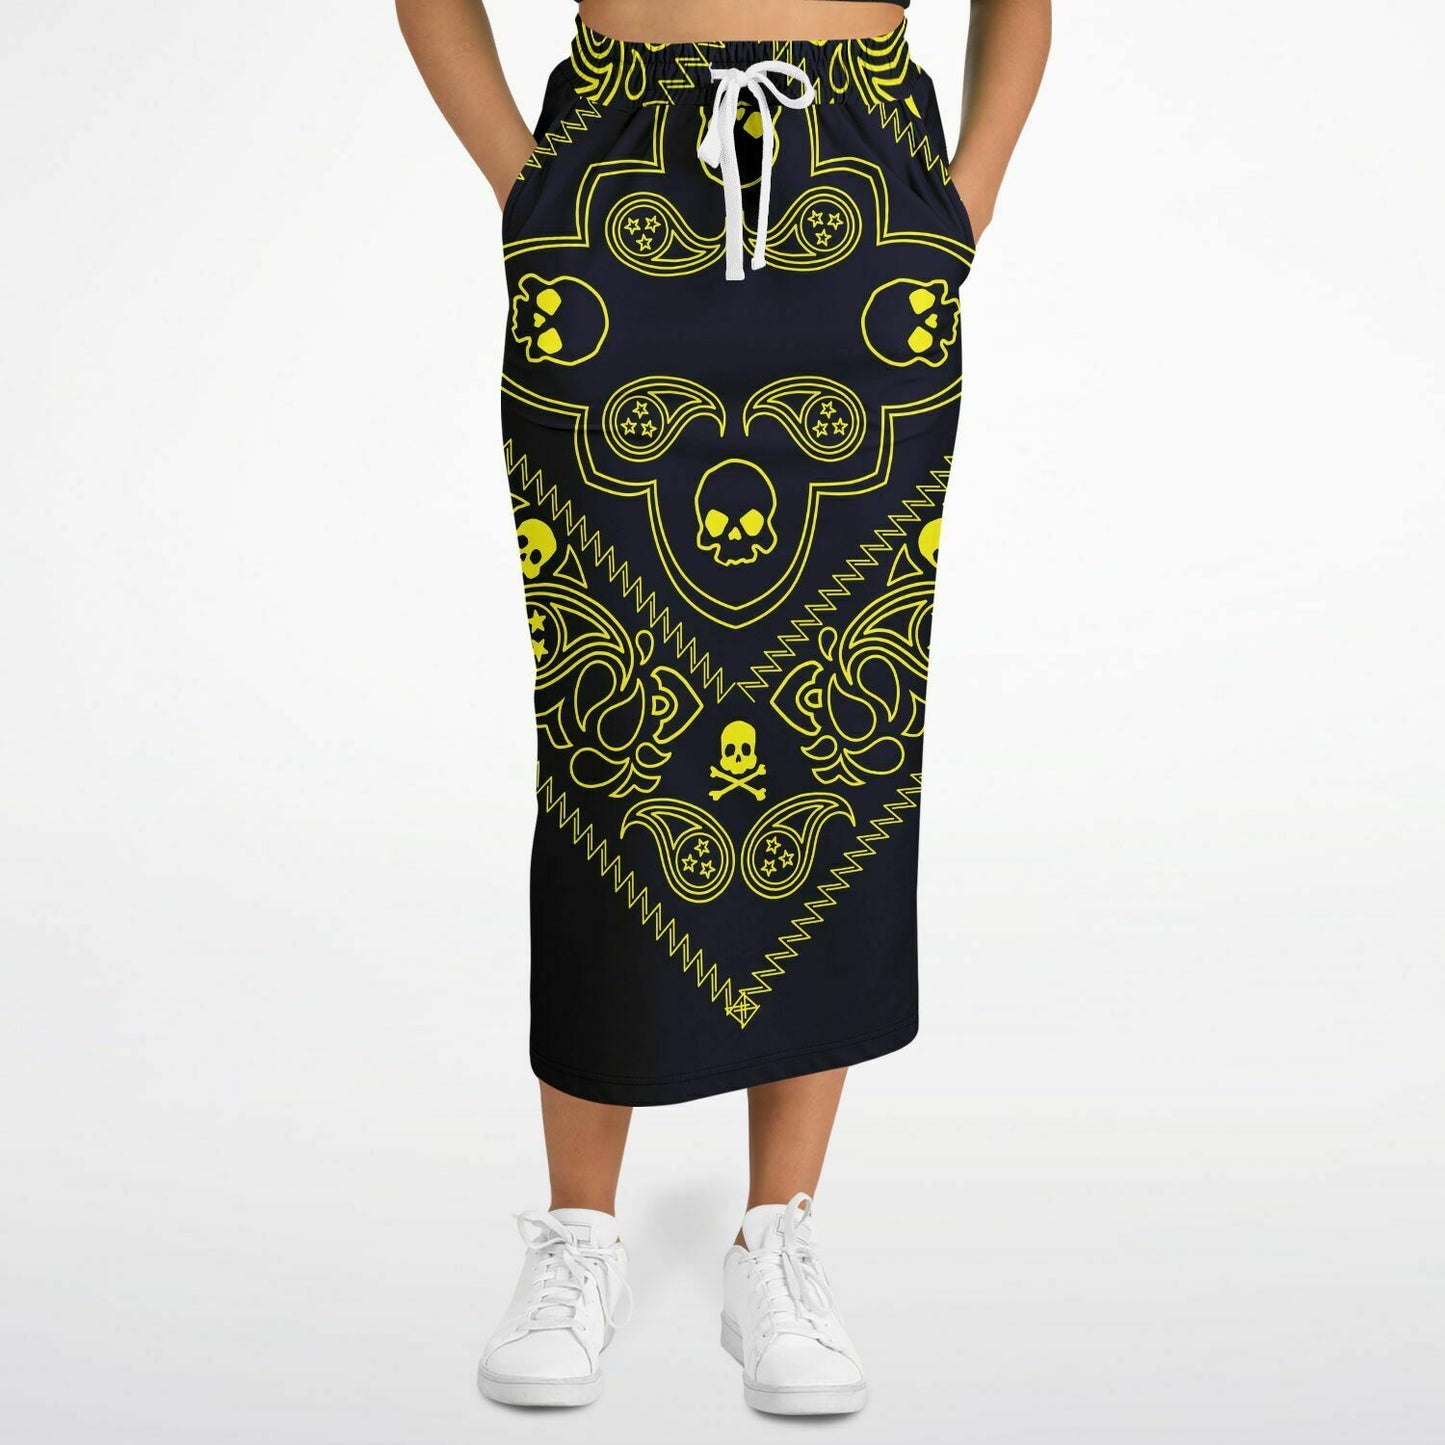 Skull Paisley Graphic Pocket skirt